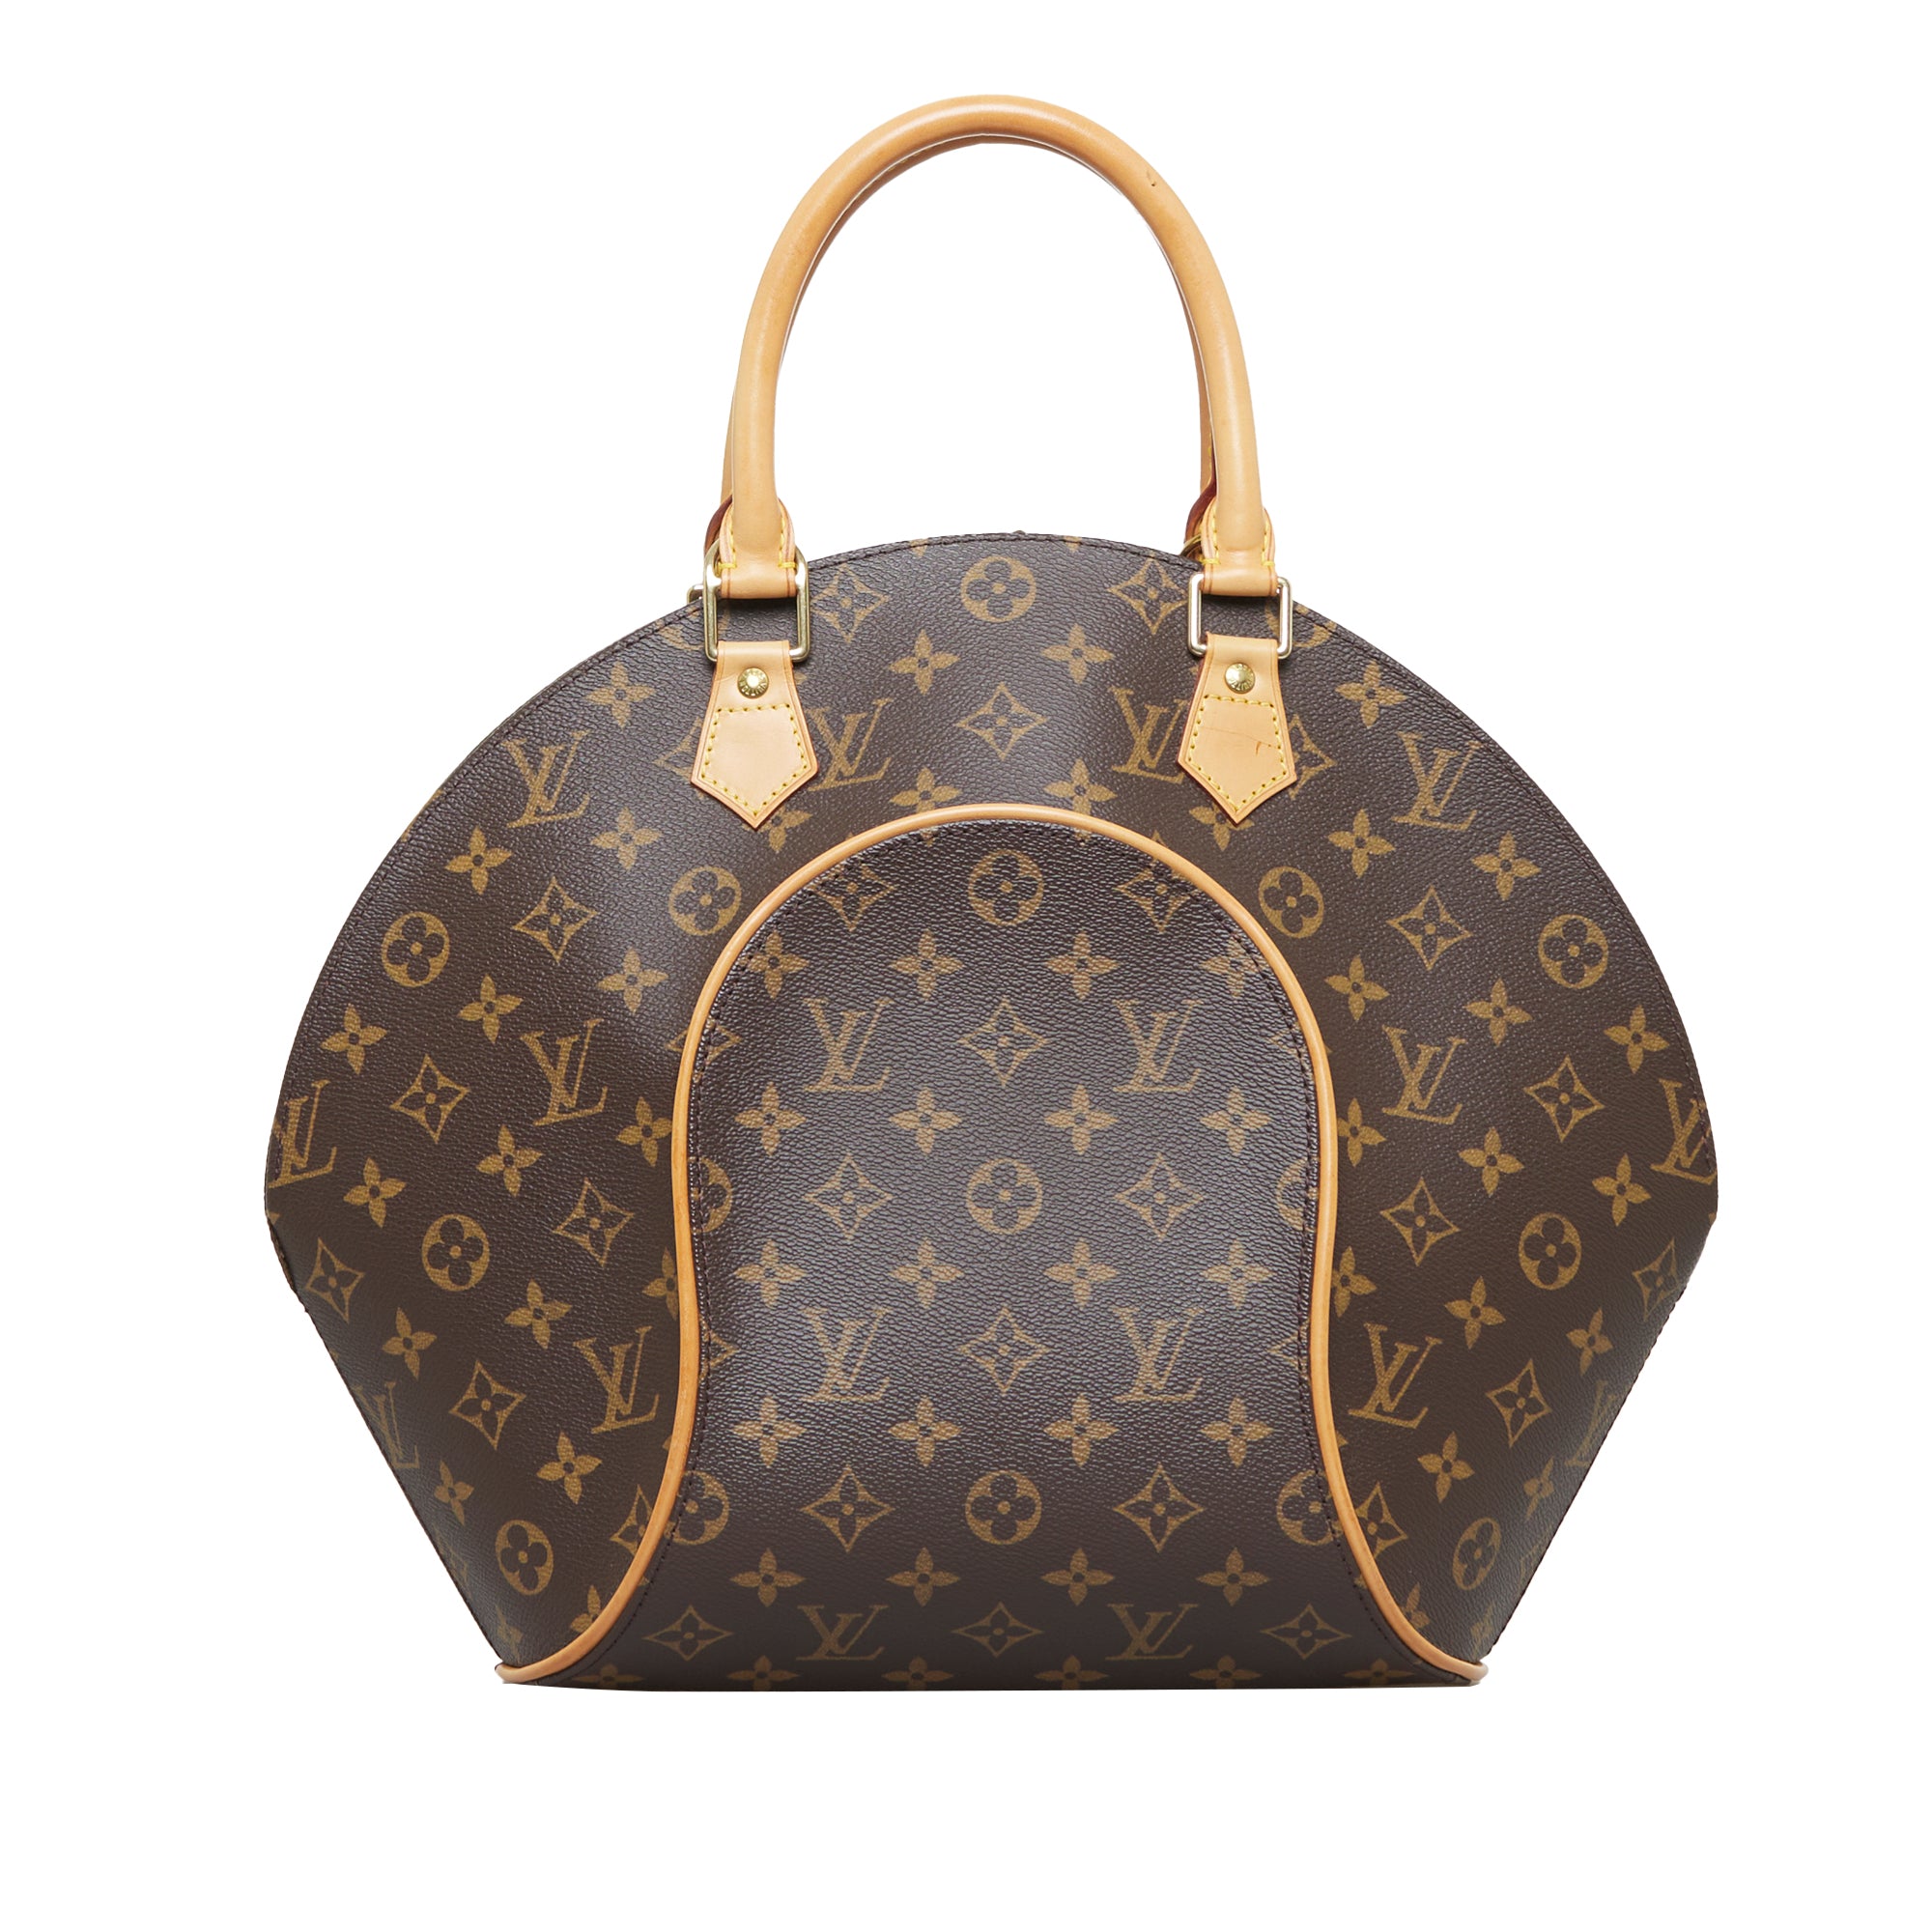 100% AUTH. Louis Vuitton Monogram Ellipse Mm Handbag- EXCELLENT